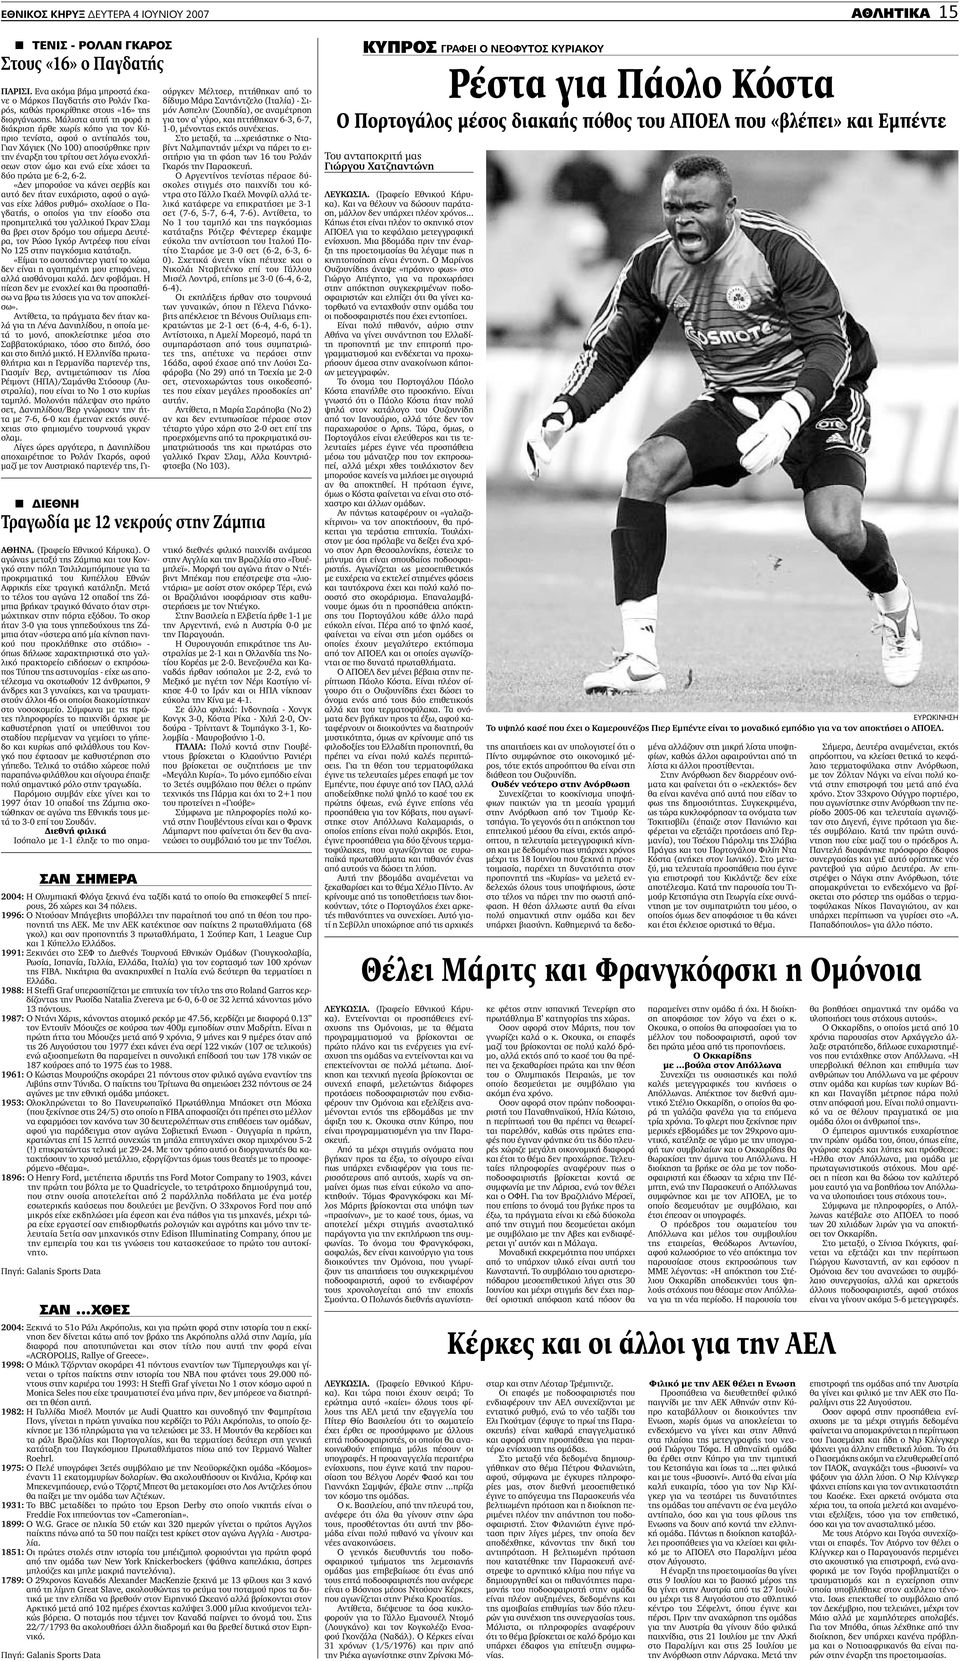 αυτή την φορά είναι «ΑCROPOLIS, Rallye of Greece». 1998: Ο Μάικλ Τζόρνταν σκοράρει 41 πόντους εναντίον των Τίµπεργουλφς και γίνεται ο τρίτος παίκτης στην ιστορία του ΝΒΑ που φτάνει τους 29.